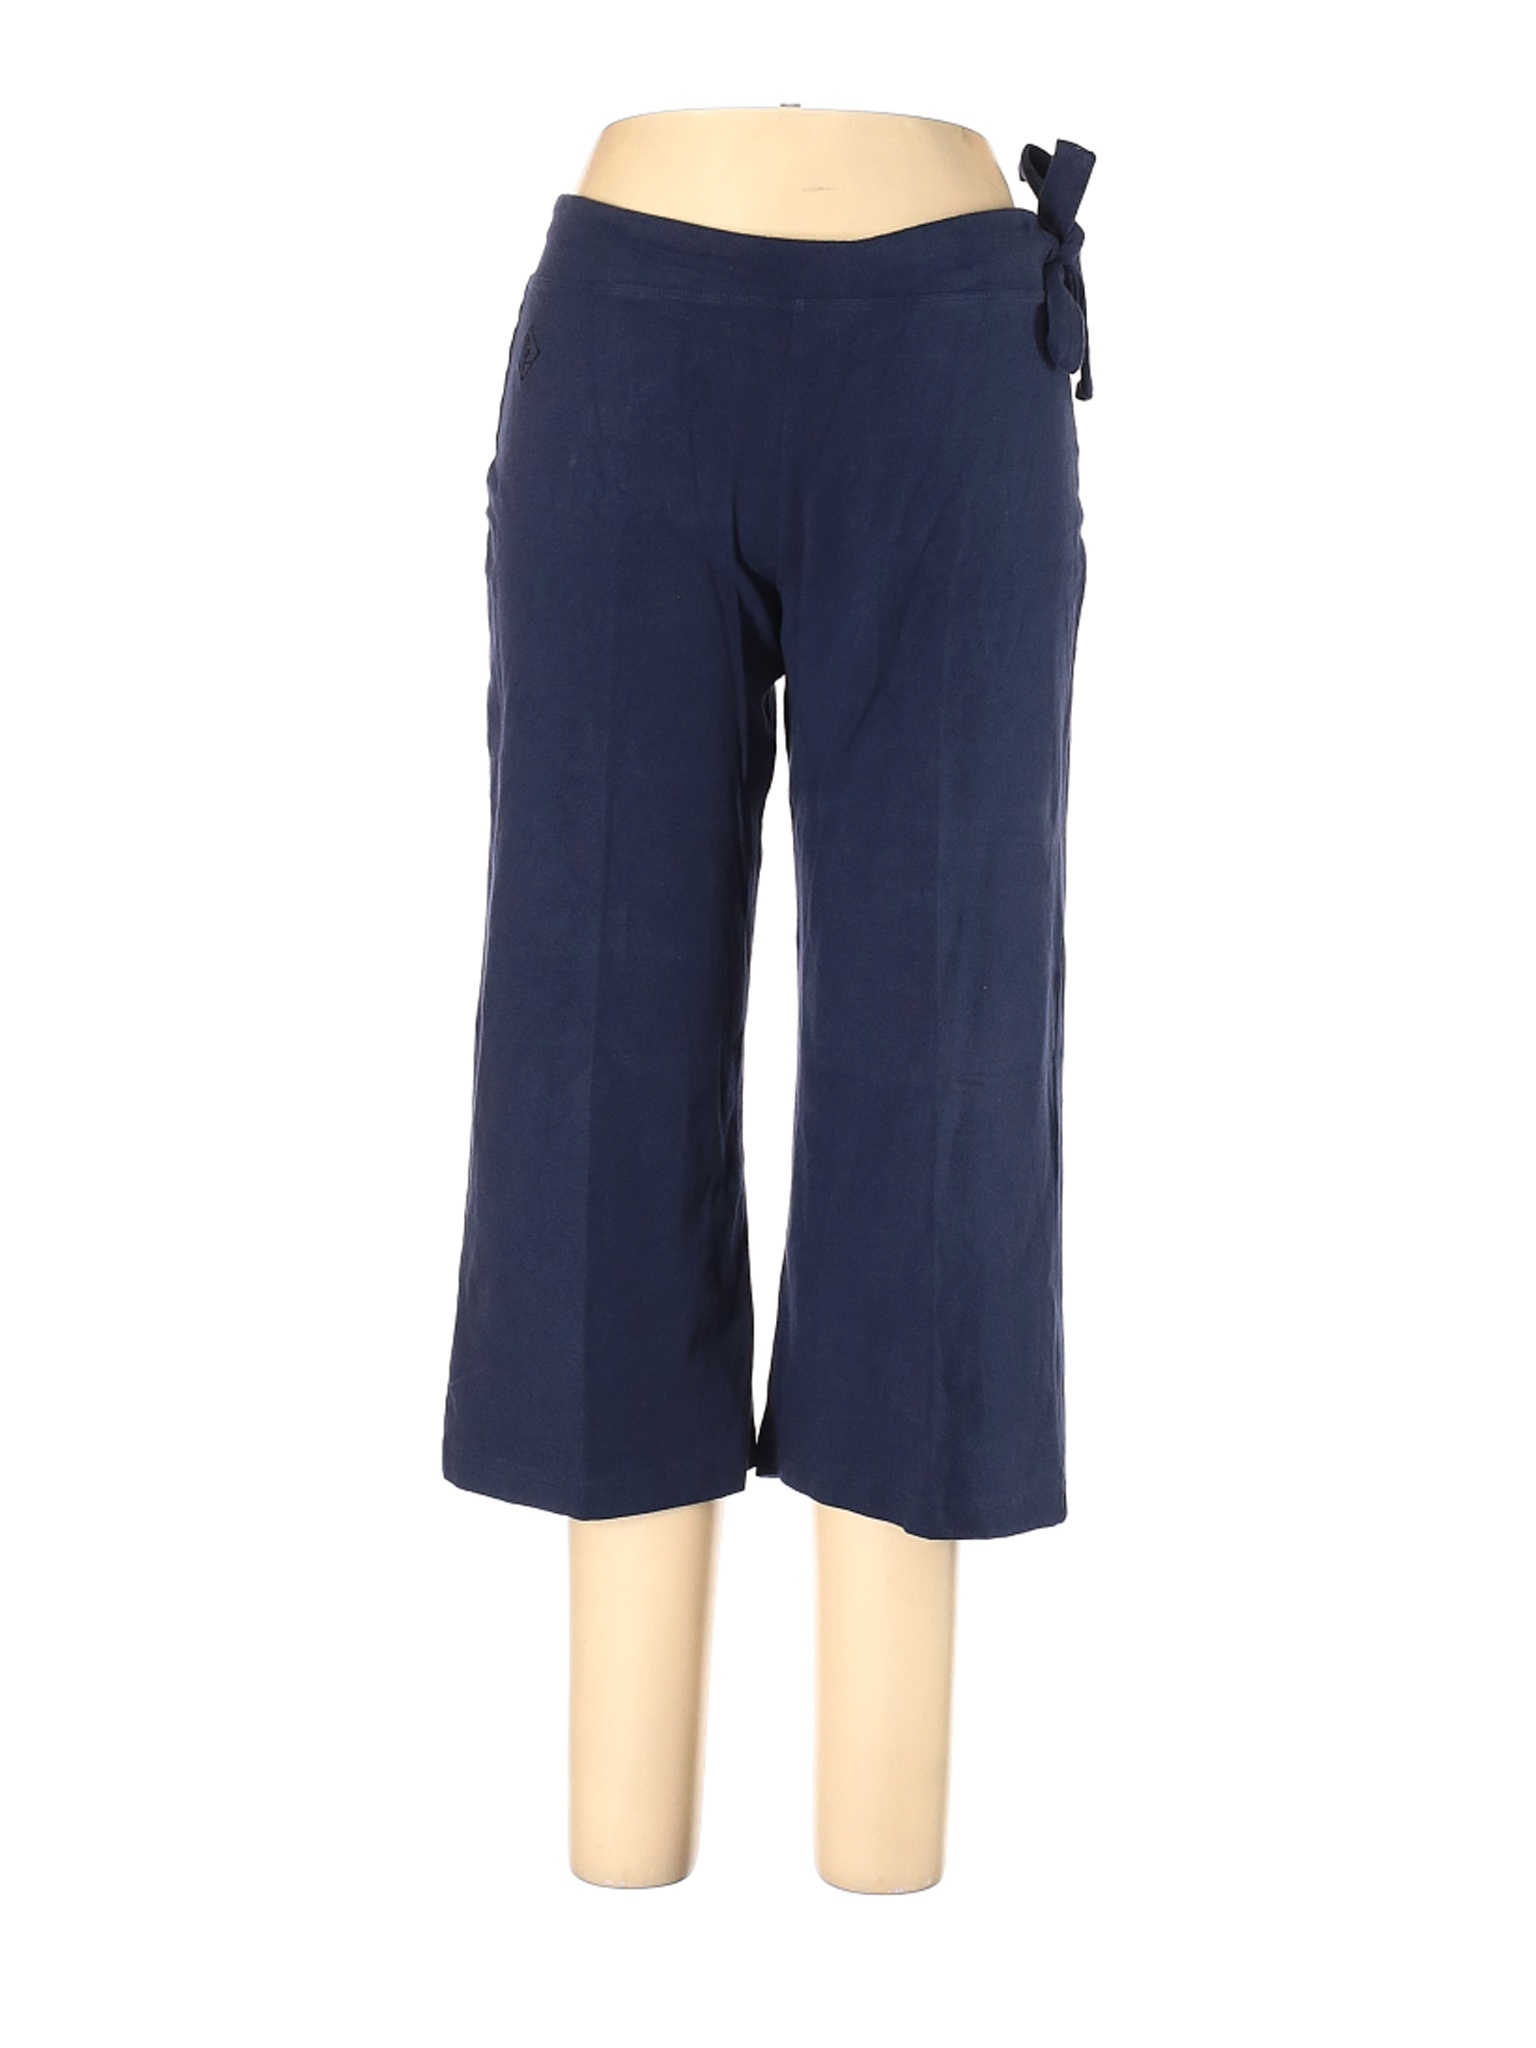 Stonewear Designs Women Blue Casual Pants L | eBay